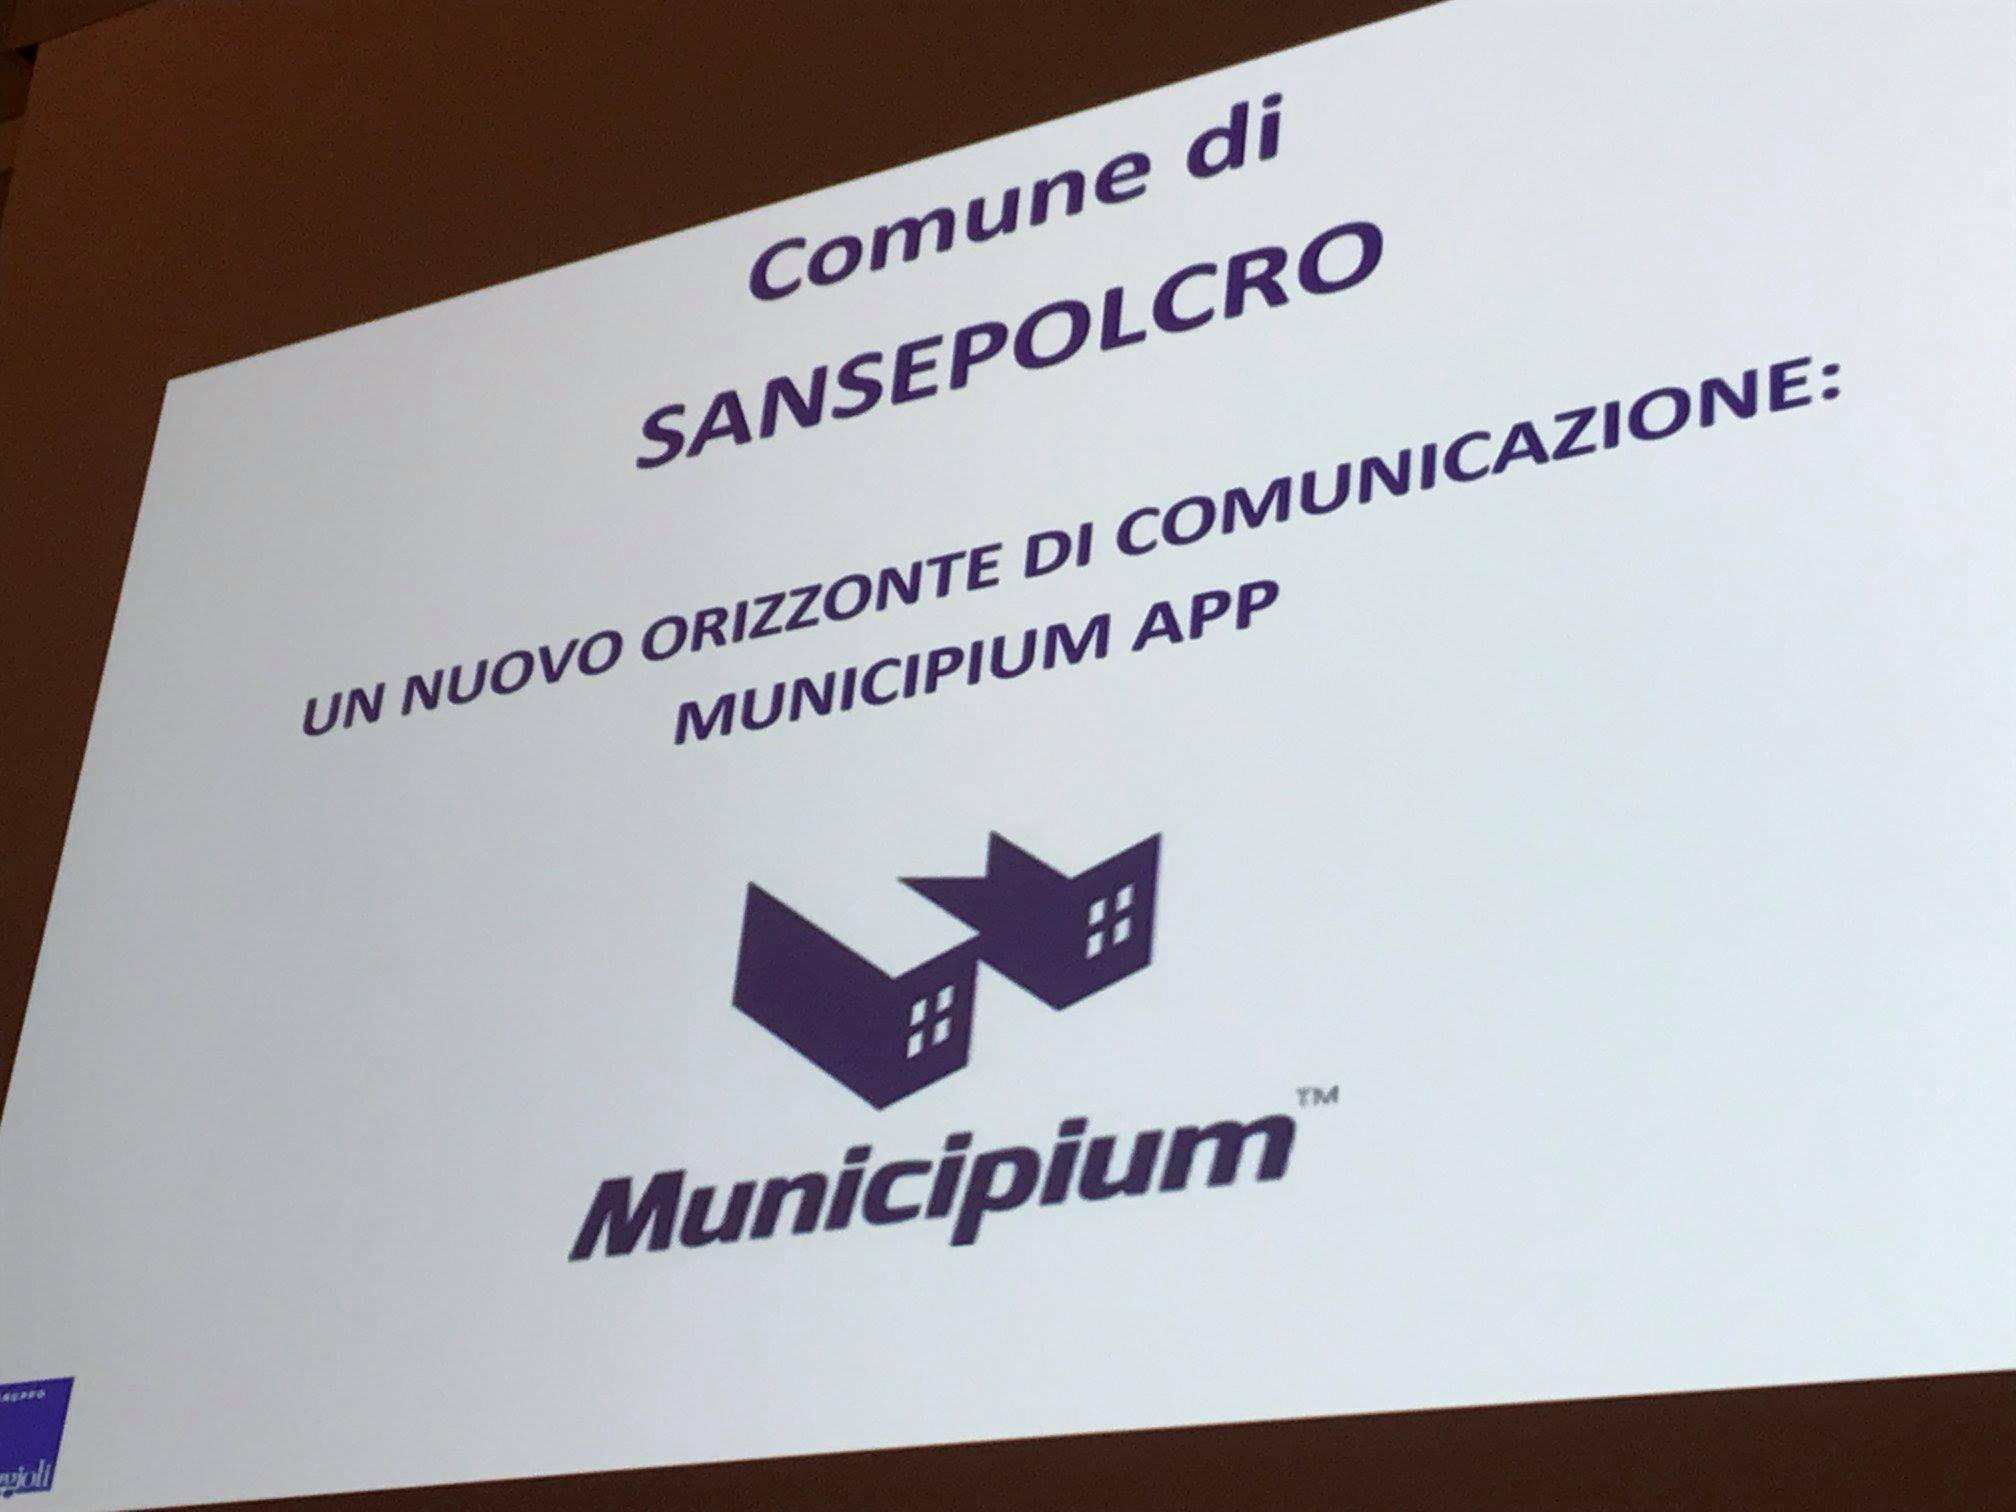 Municipium, è online la nuova app ufficiale del Comune di Sansepolcro